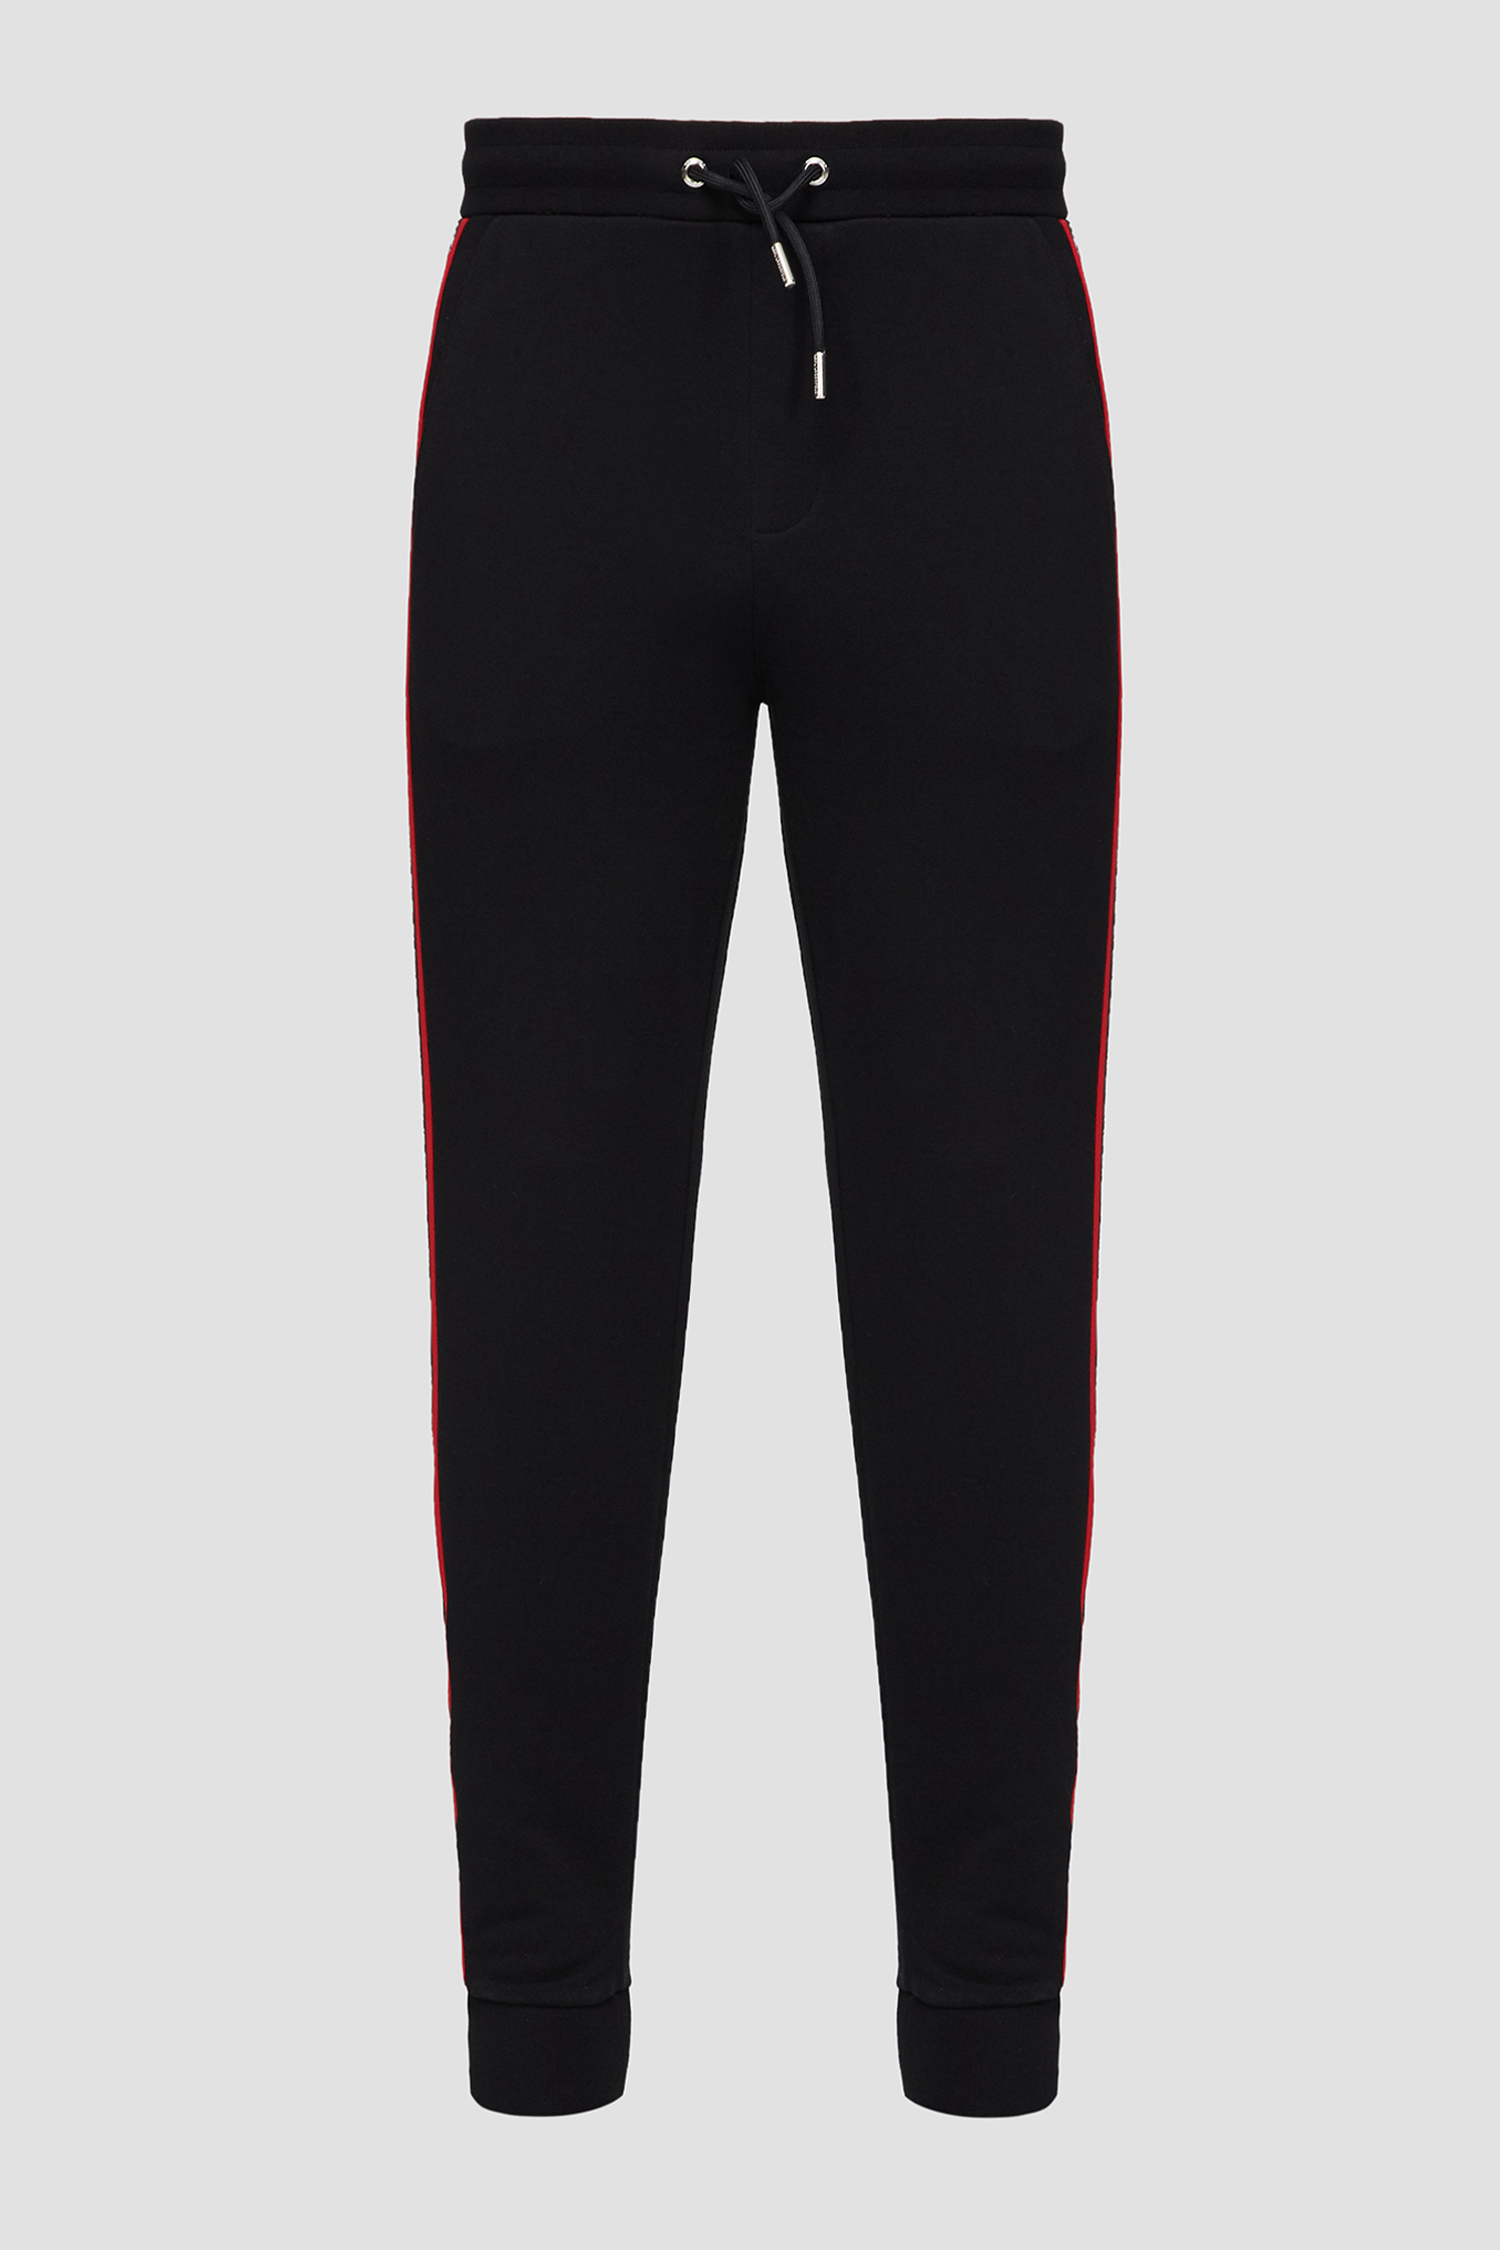 Чоловічі чорні спортивні штани Karl Lagerfeld 532900.705425;990